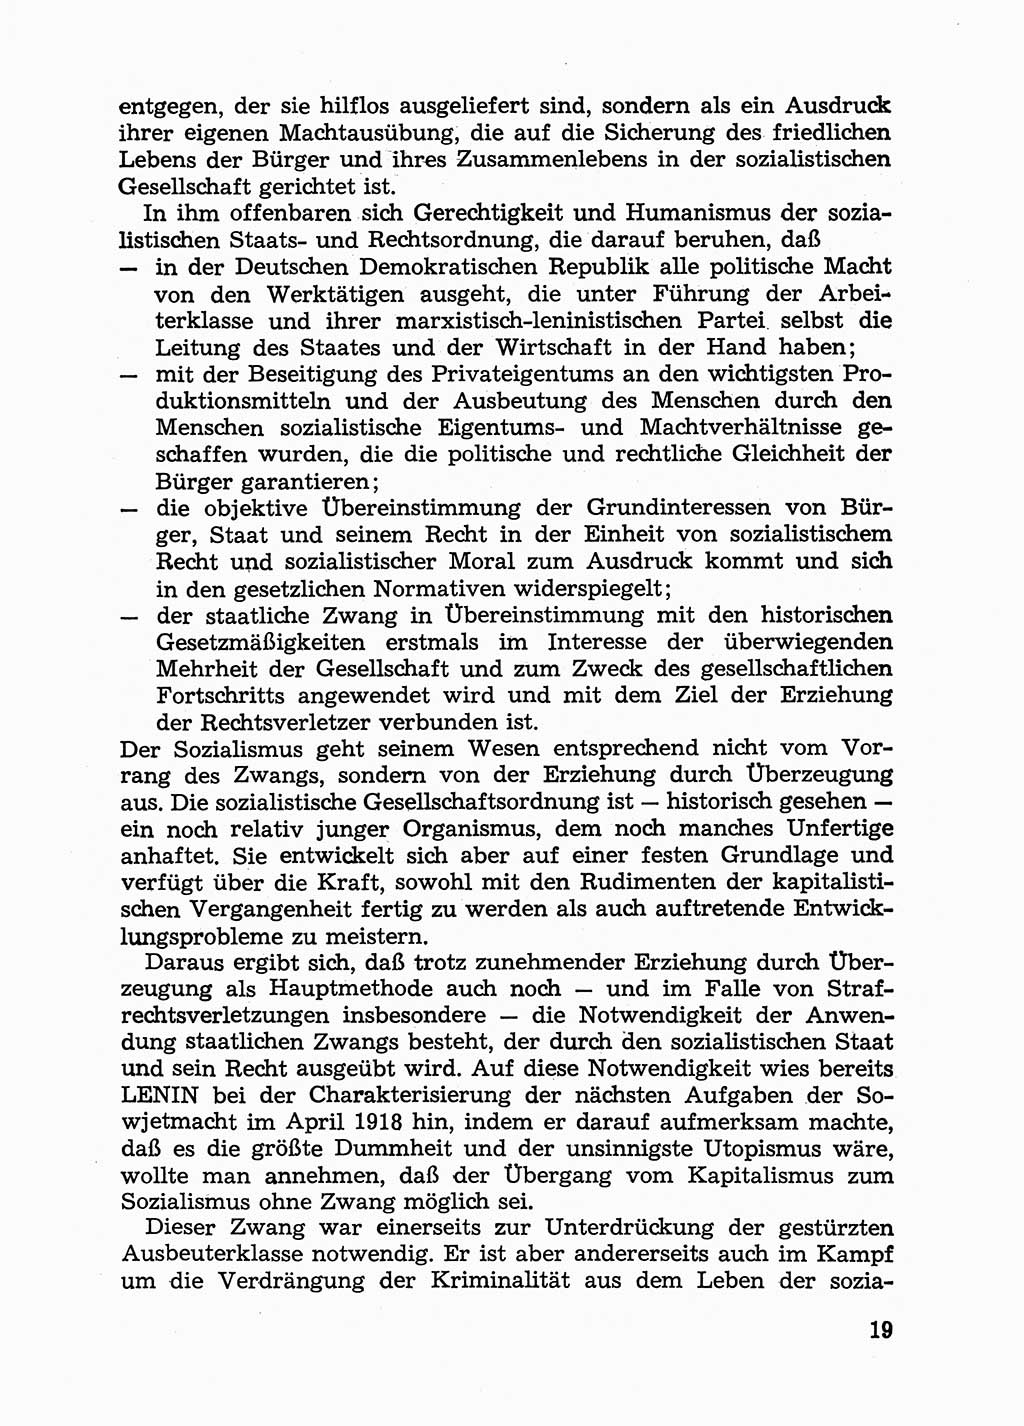 Handbuch für Betriebsangehörige, Abteilung Strafvollzug (SV) [Ministerium des Innern (MdI) Deutsche Demokratische Republik (DDR)] 1981, Seite 19 (Hb. BA Abt. SV MdI DDR 1981, S. 19)